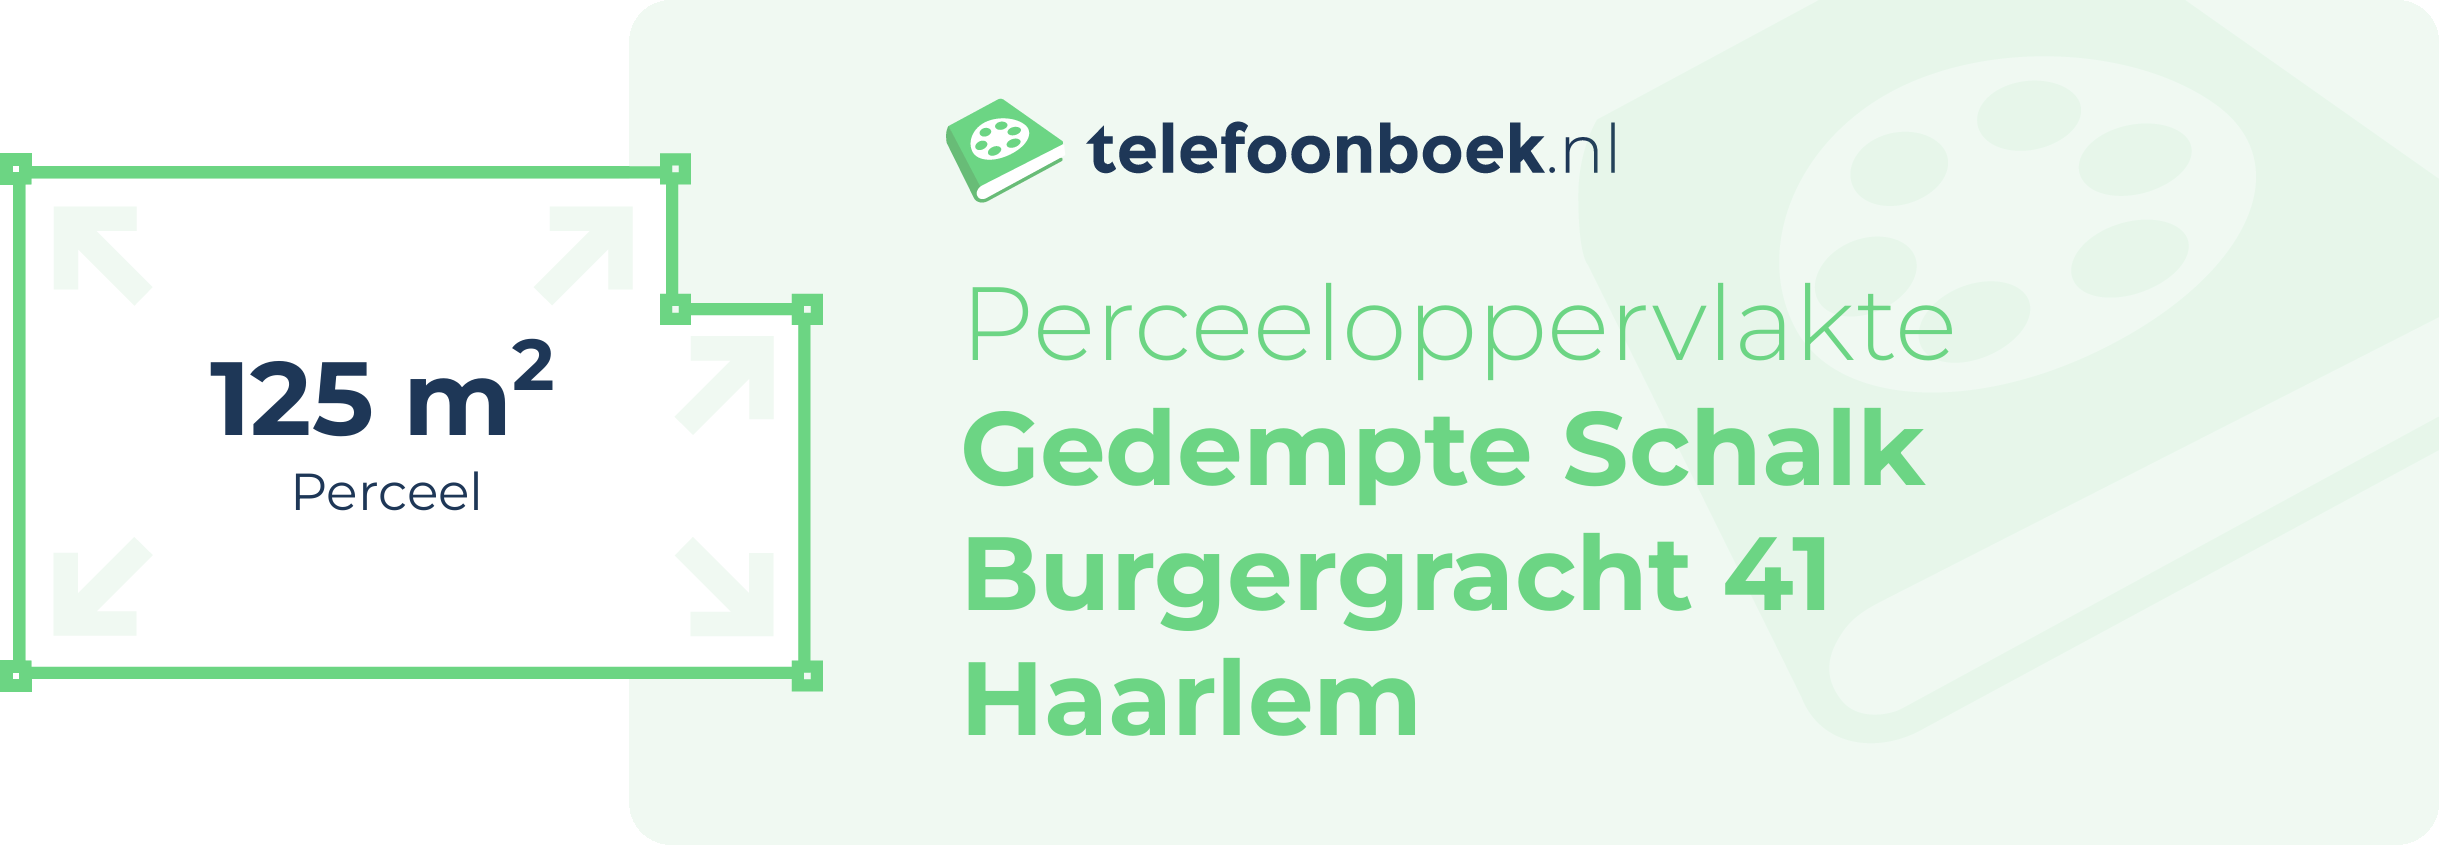 Perceeloppervlakte Gedempte Schalk Burgergracht 41 Haarlem